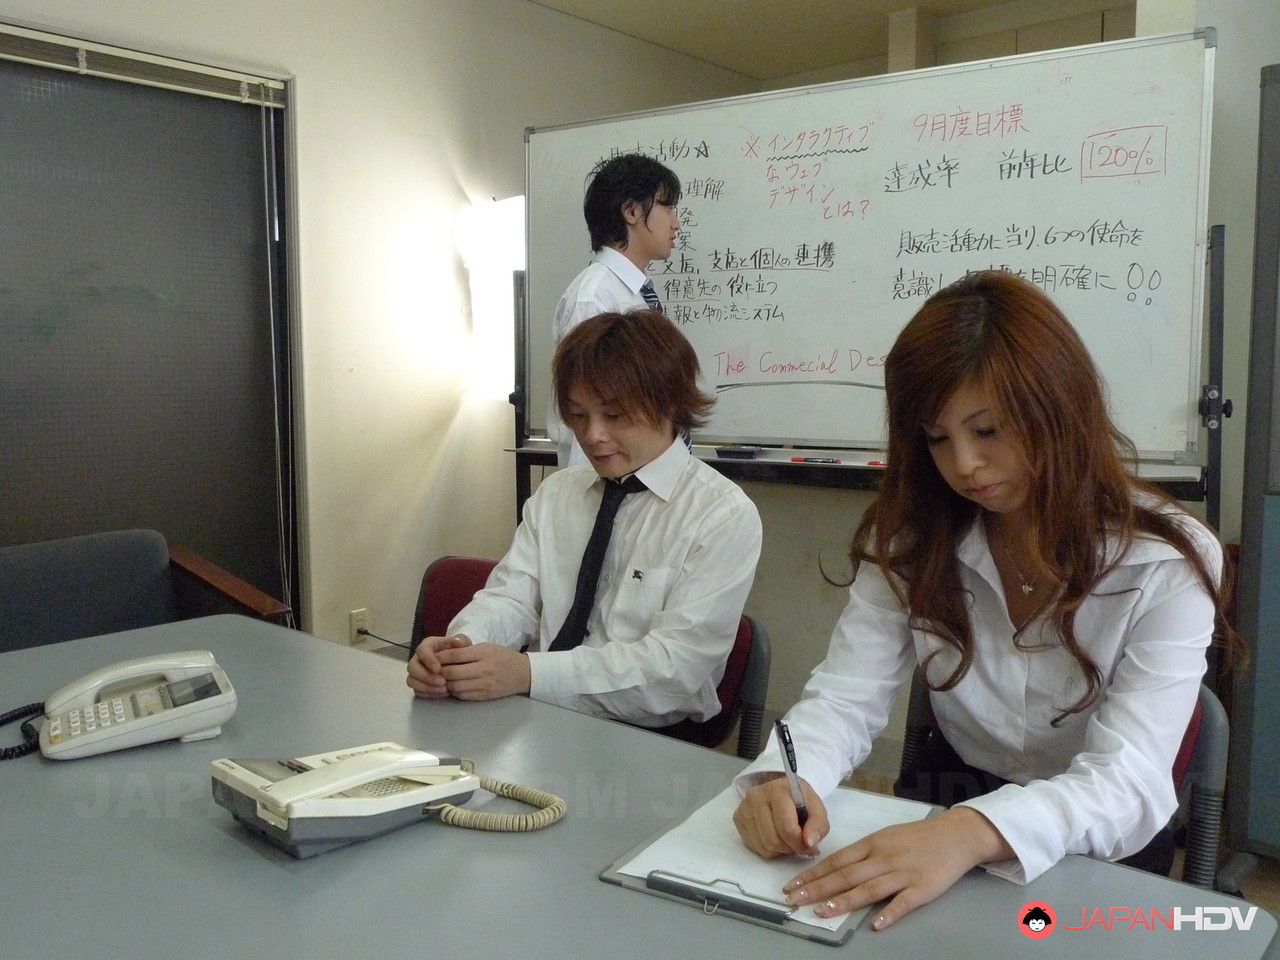 Japanese office babe Rina Kikukawa participates in a blowbang at work 色情照片 #424605307 | Japan HDV Pics, Rina Kikukawa, Japanese, 手机色情